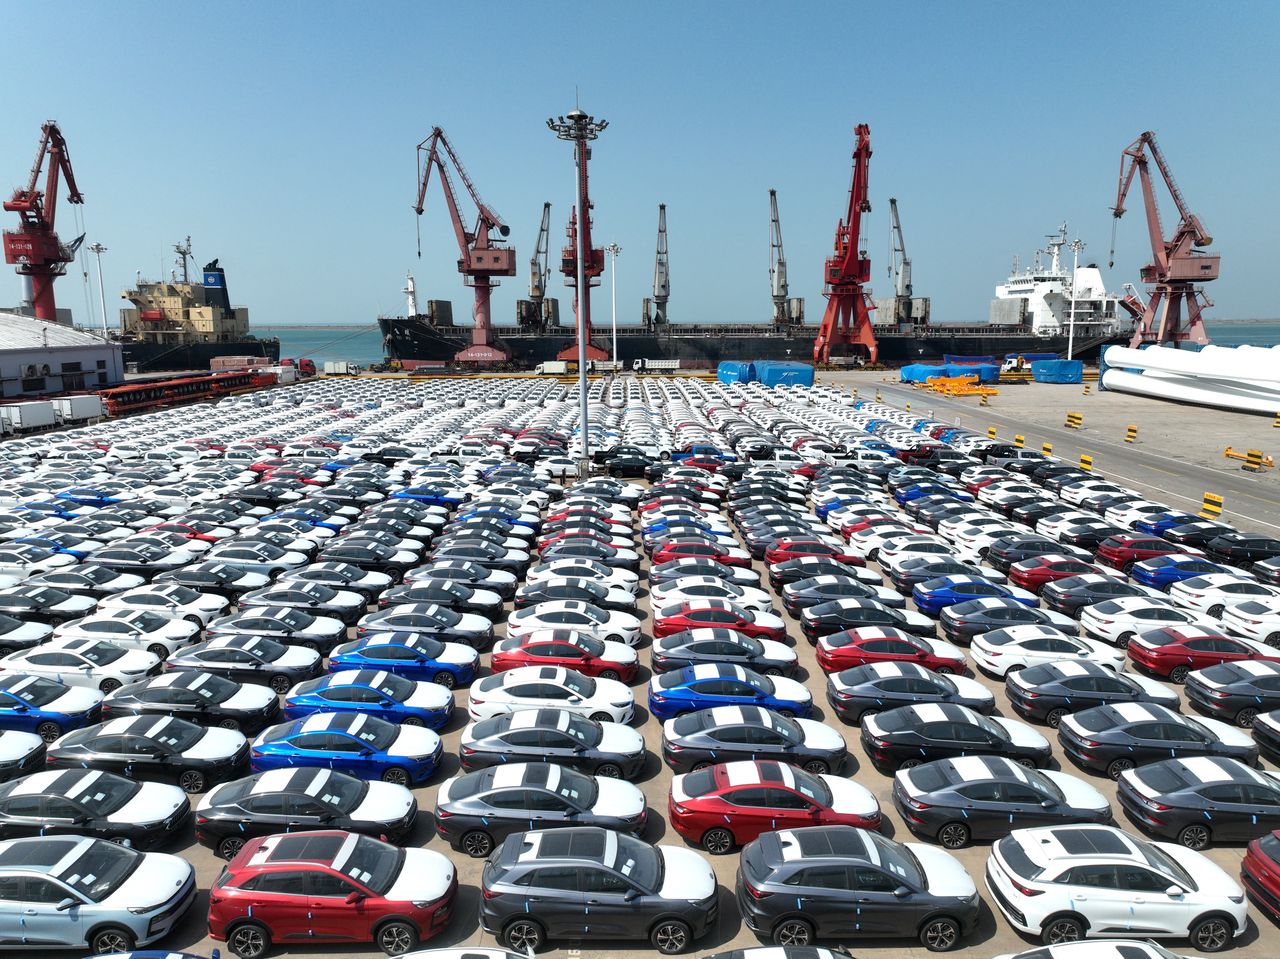 Chińskie pojazdy zalewają zagraniczne rynki. Statystyki mówią same za siebie